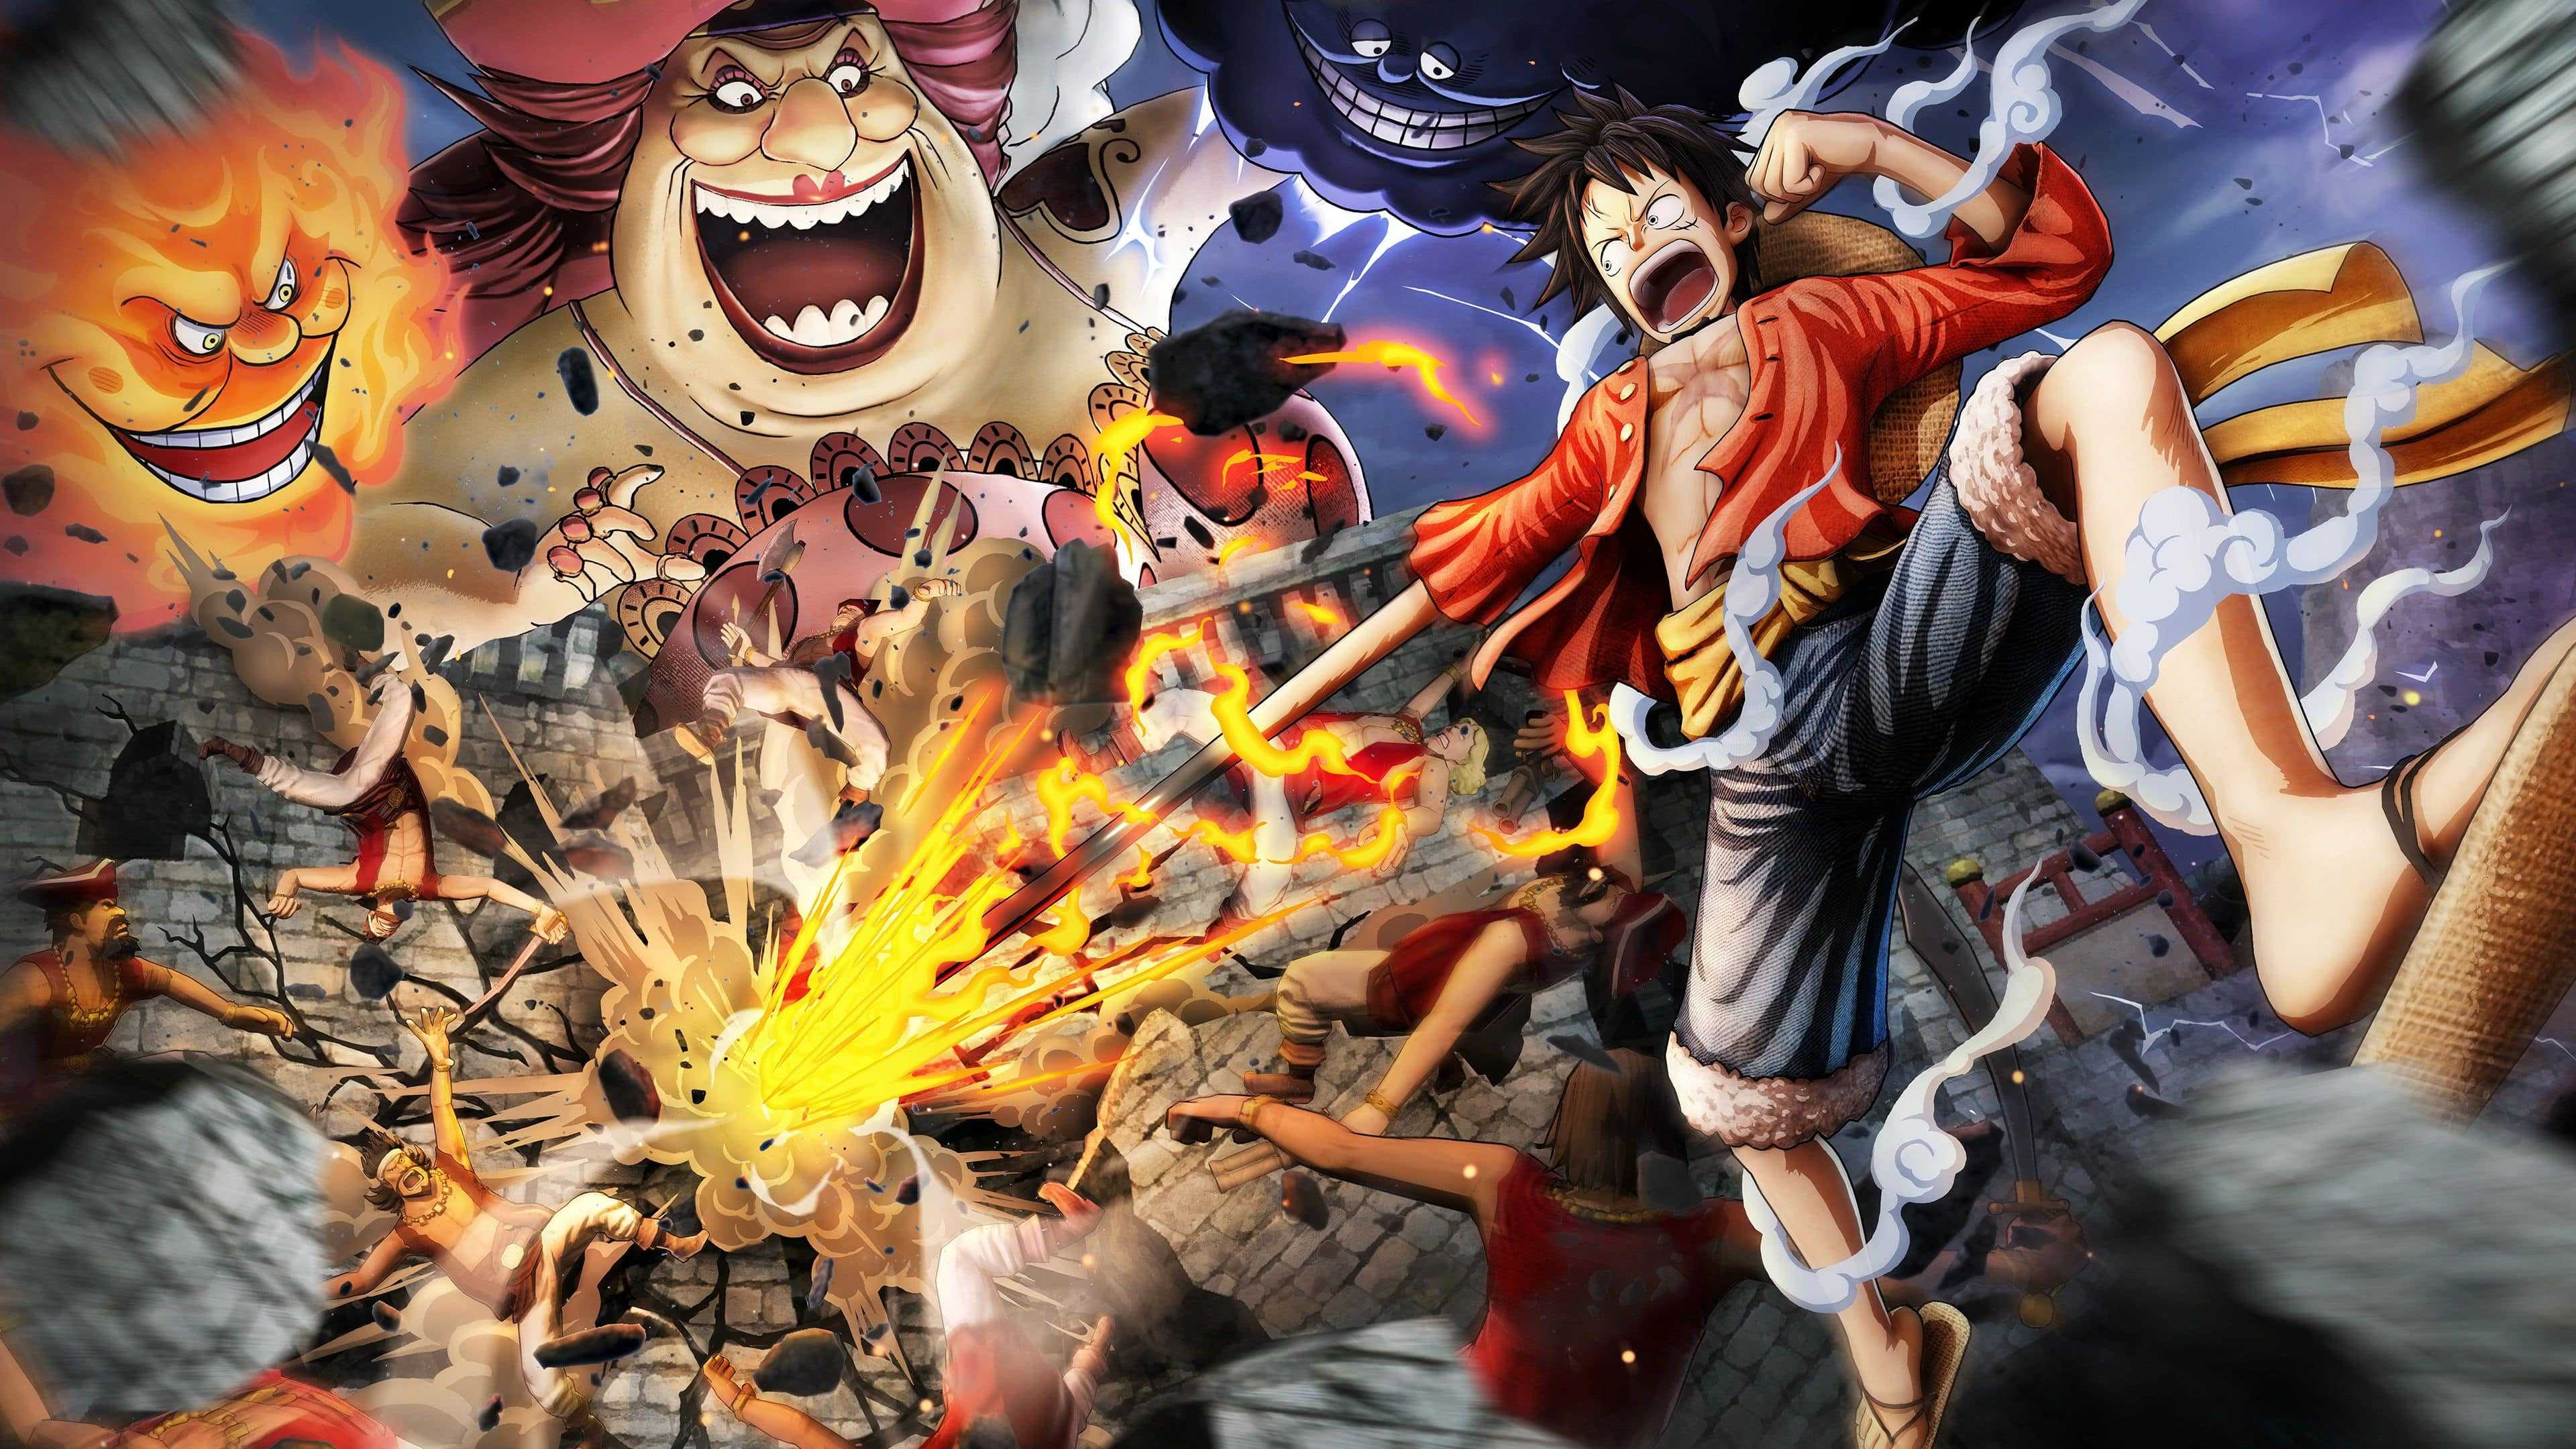 Hình nền One Piece 4K - NawPic: Bạn đang tìm kiếm một bộ sưu tập độc đáo về hình nền One Piece 4K để trang trí cho màn hình desktop của mình? Hãy đến với NawPic để khám phá những tác phẩm đẹp mắt với chất lượng đường nét tinh tế và sắc màu đẹp nhất.